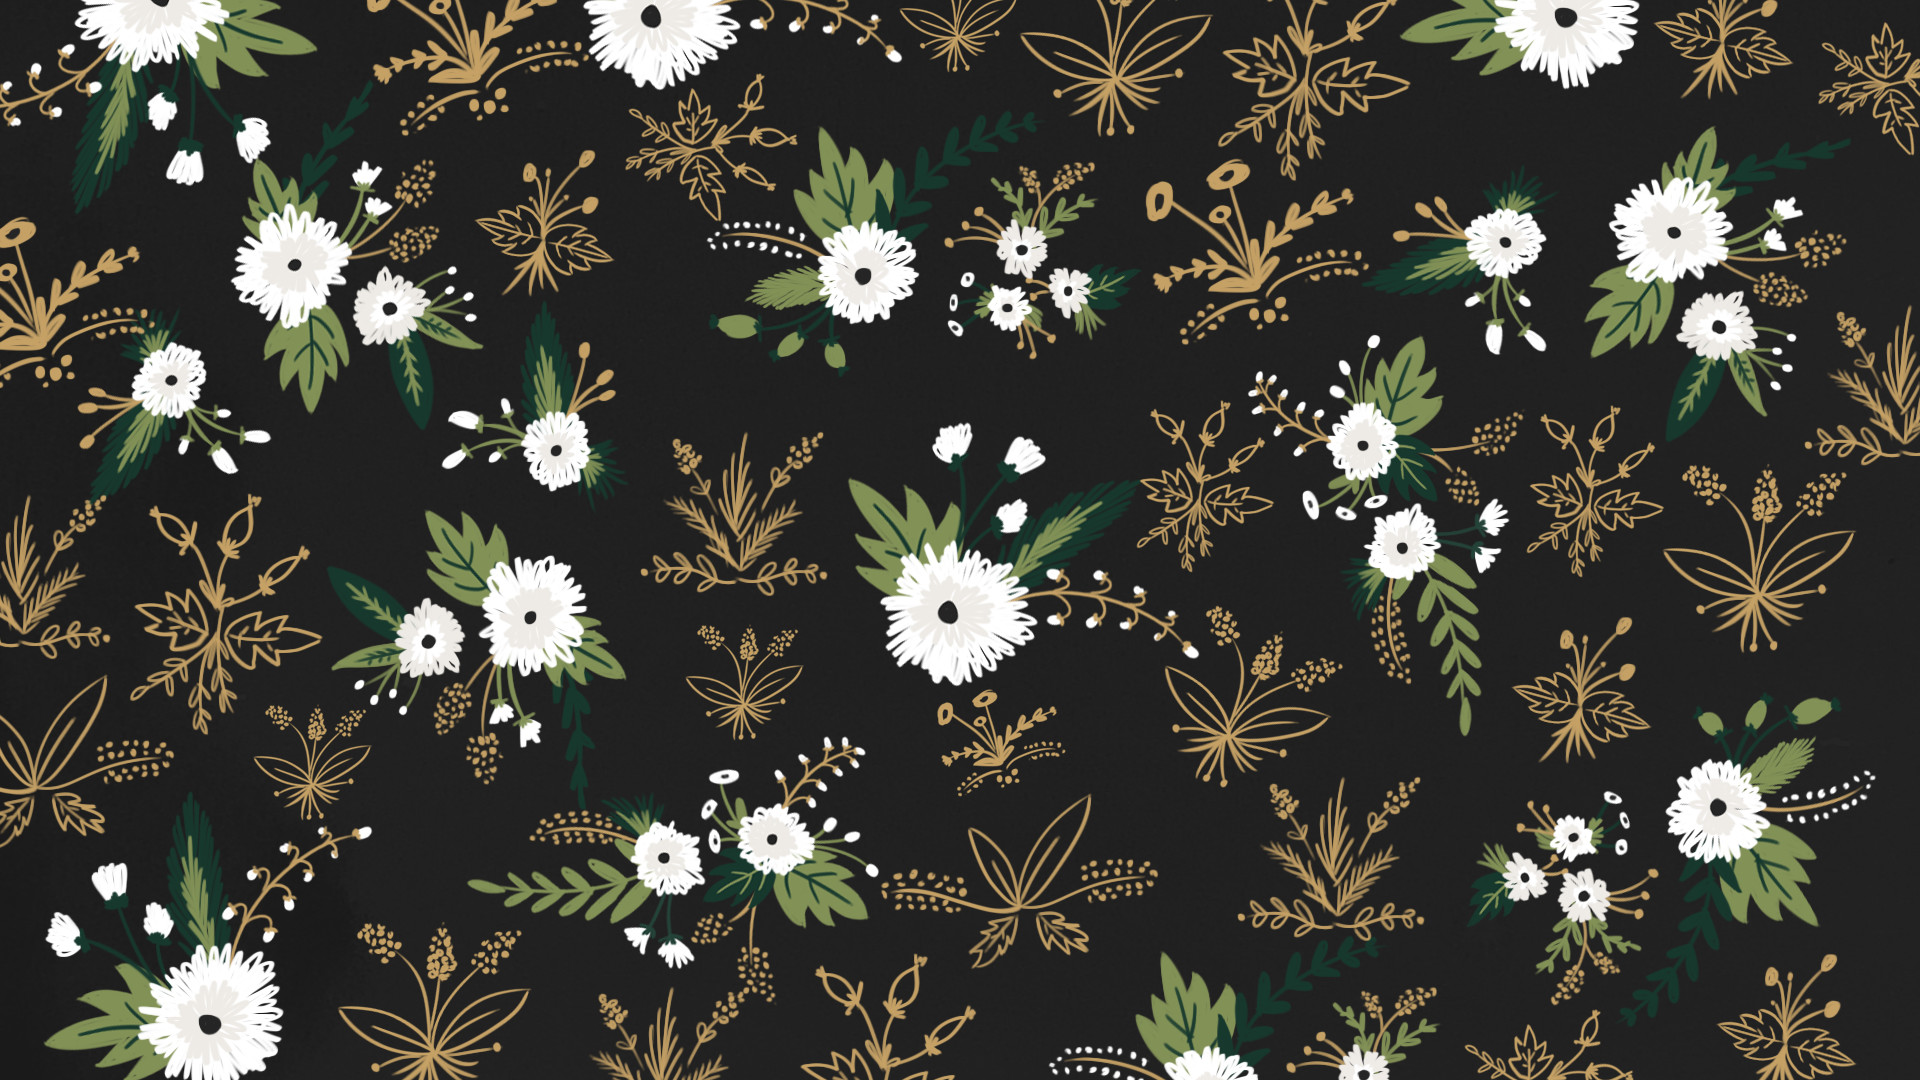 1920x1080 desktop_positive_pattern_by_cocorie-d85k113.png (1920Ã1080) | Pattern |  Pinterest | Wallpaper and Flower art